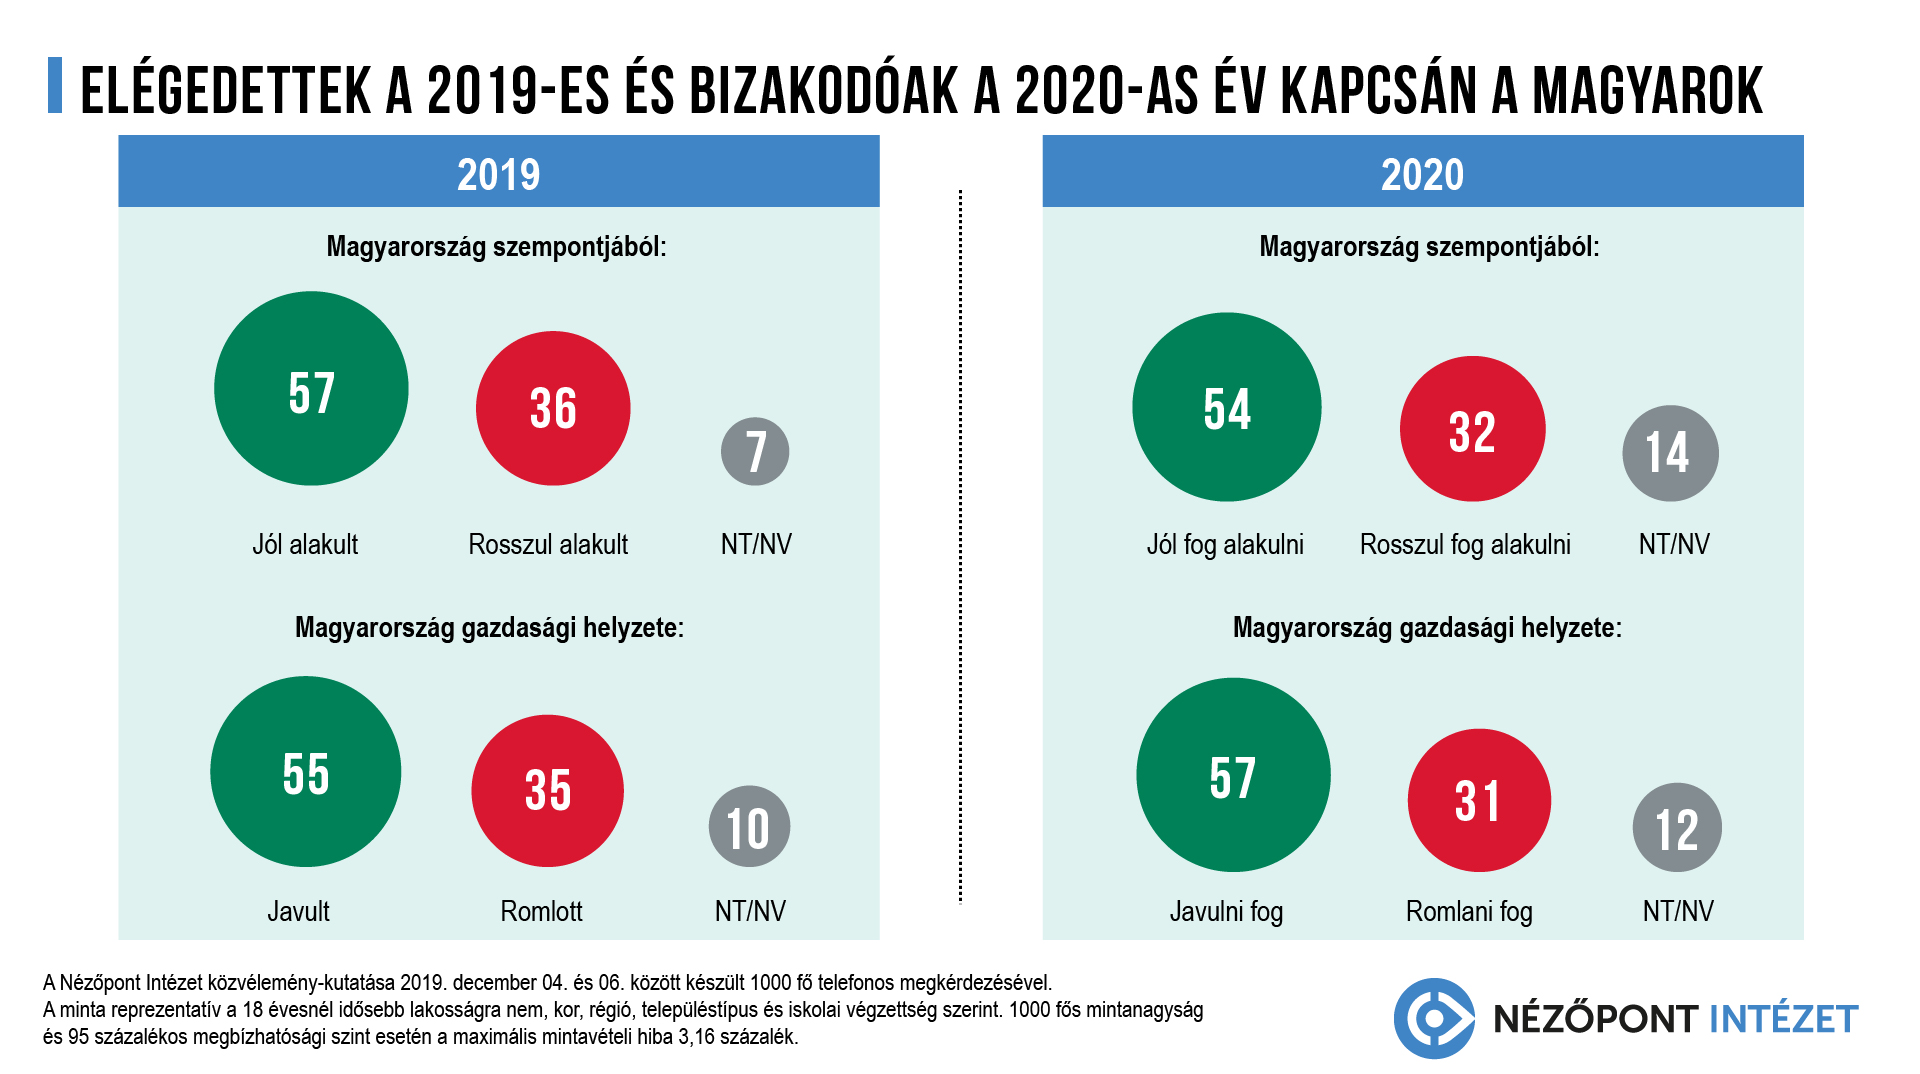 Elégedettek a 2019-es és bizakodóak a 2020-as év kapcsán a magyarok